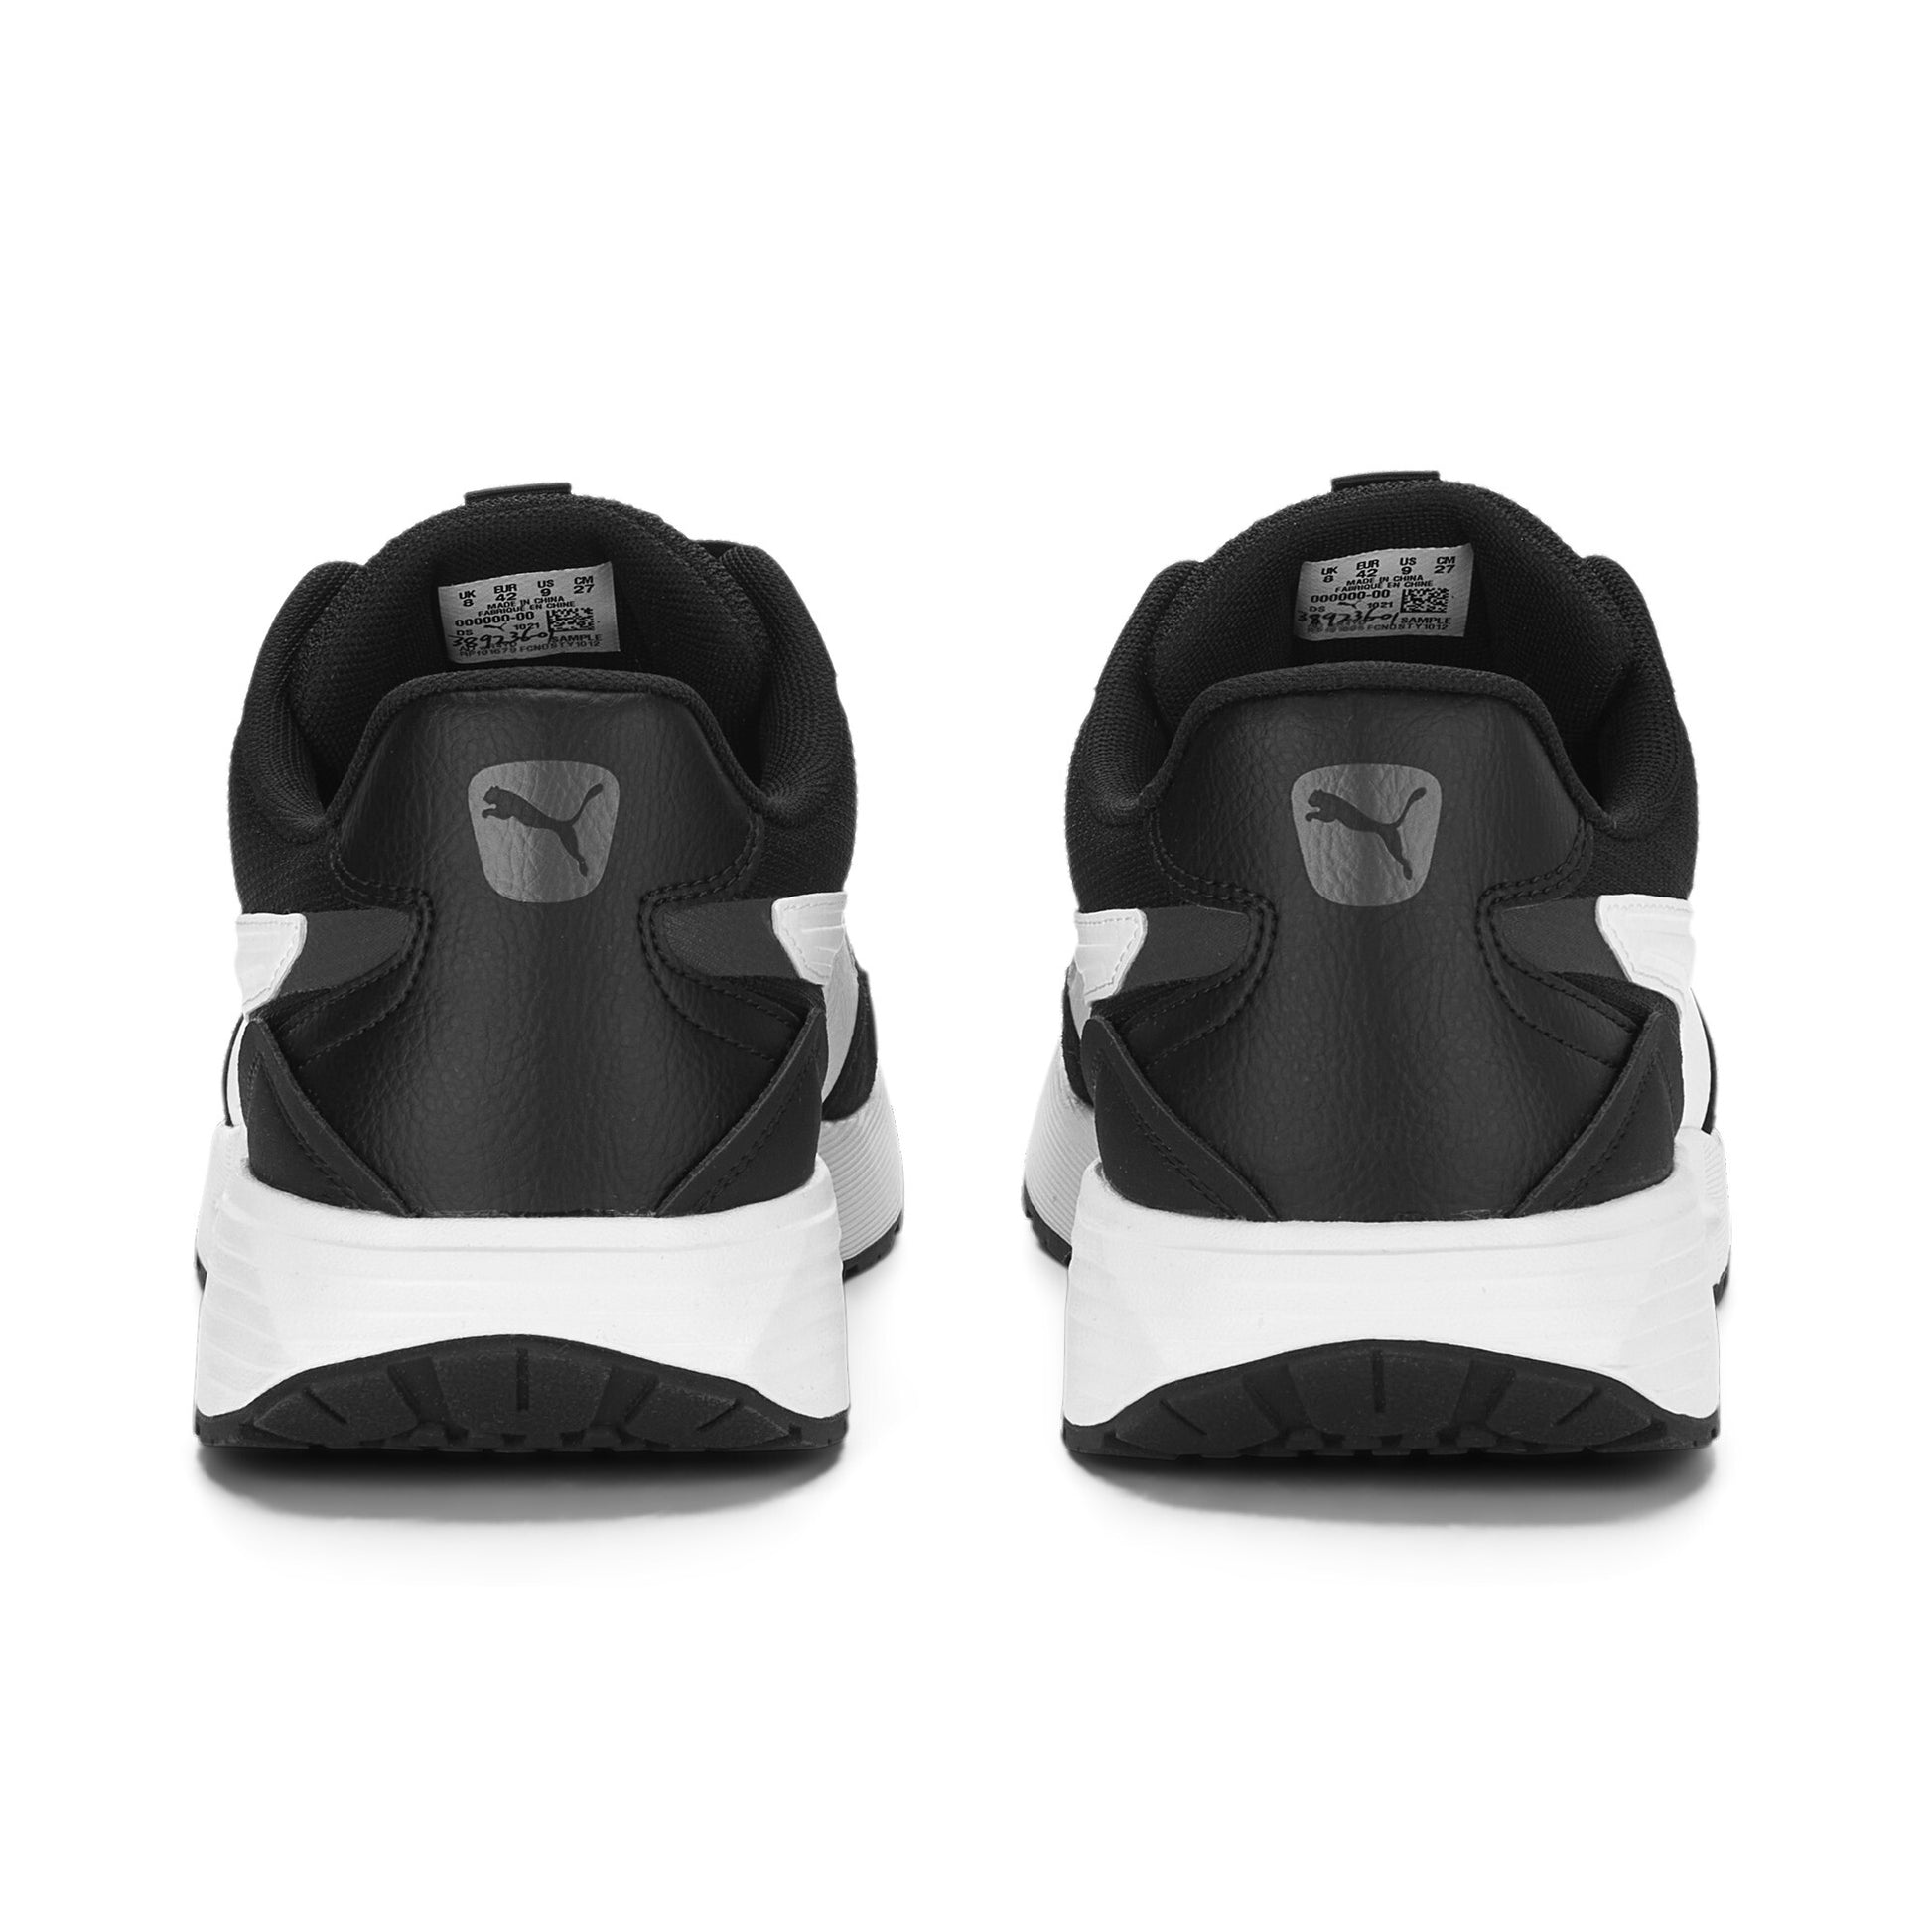 נעלי ספורט לגברים Runtamed בצבע שחור ולבן